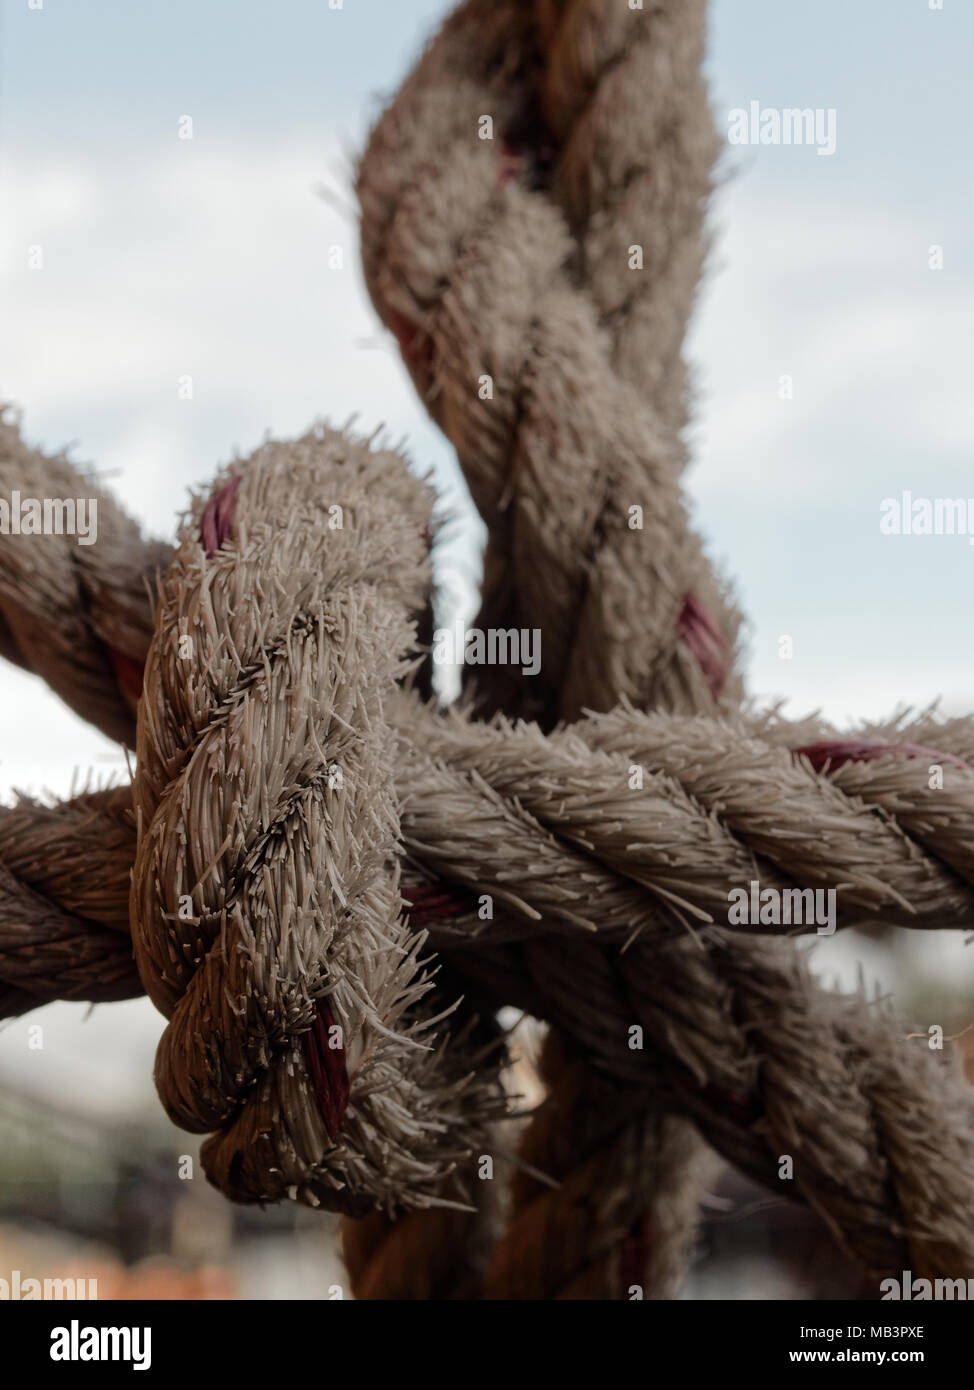 La corde de chanvre attachés ensemble sur l'acier en forme de radeau net pour empêcher quelqu'un de tomber dans l'eau sur arrière-plan de la zone rurale Banque D'Images